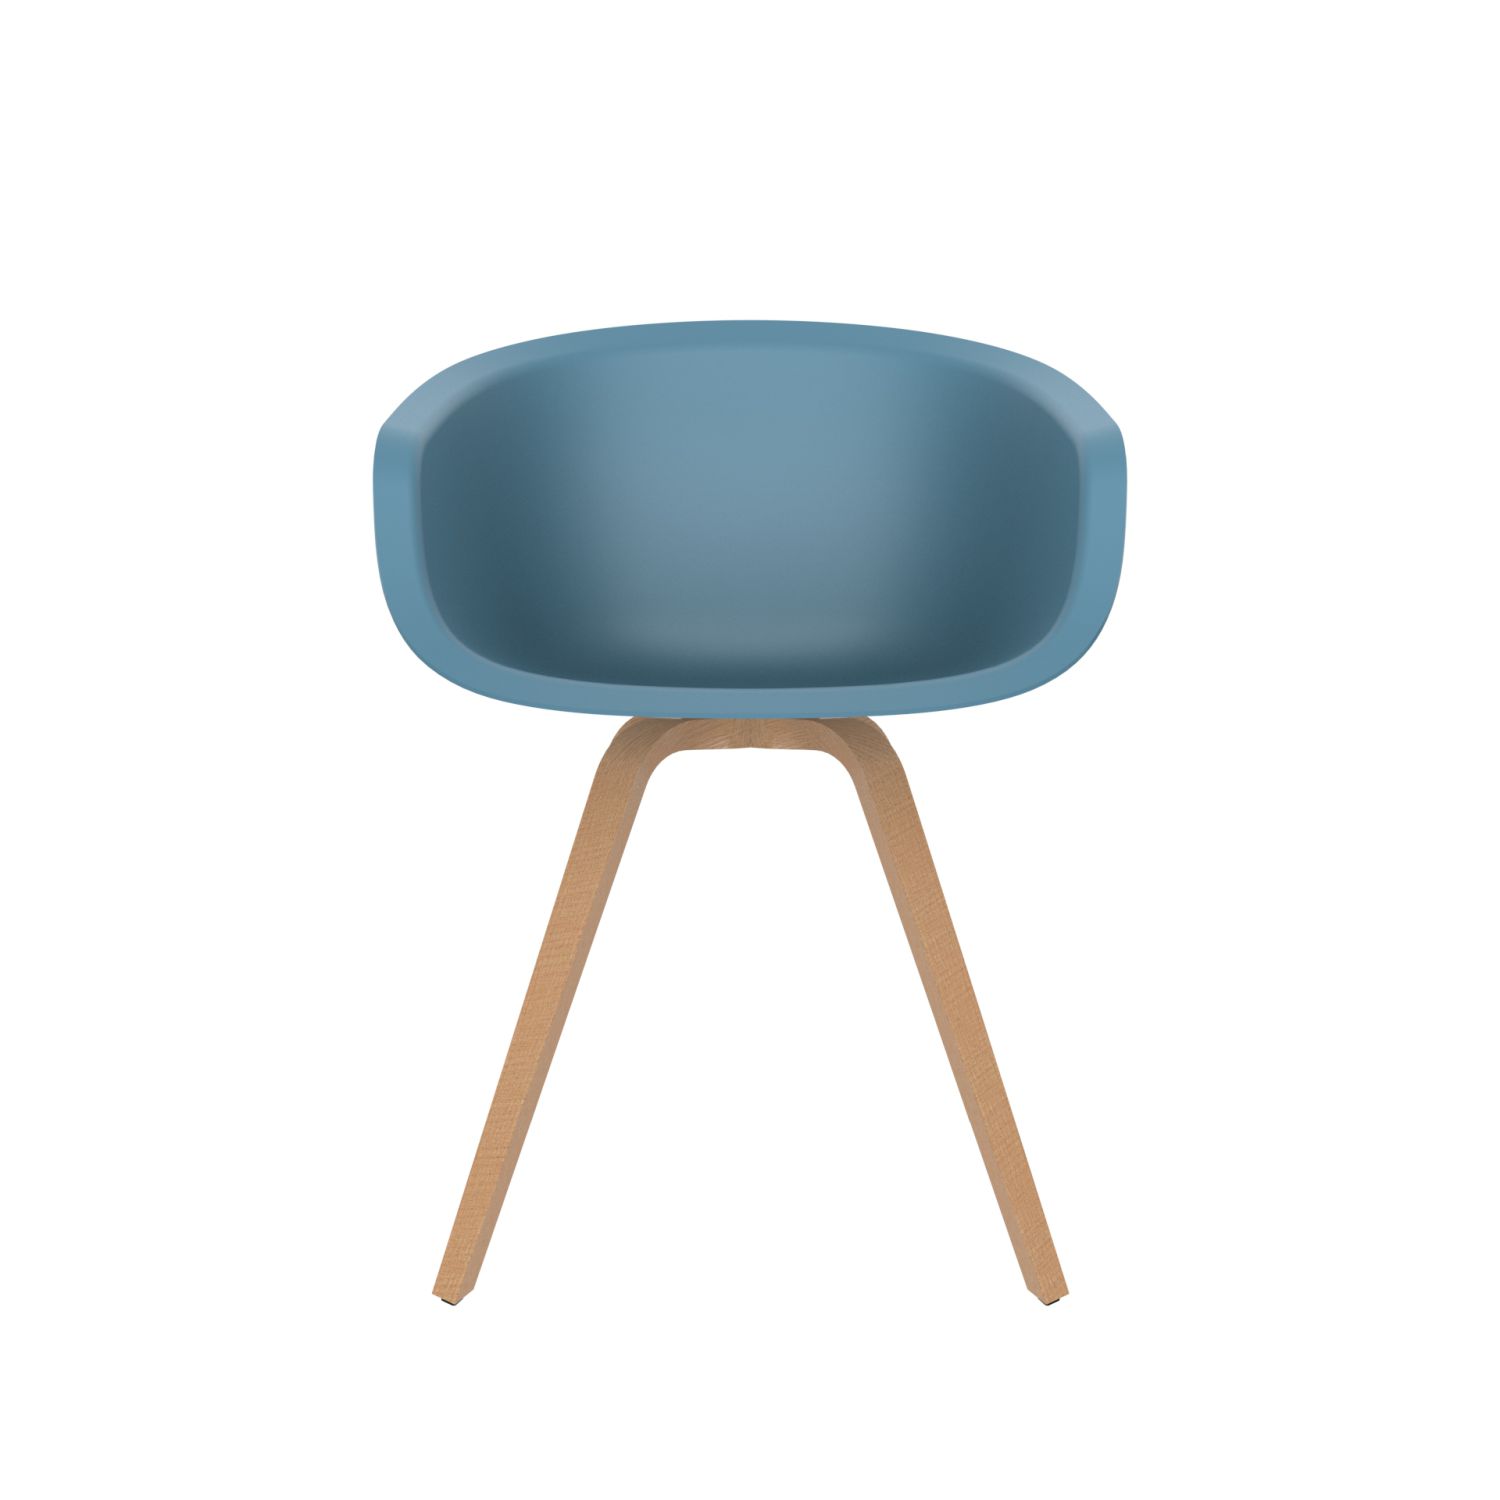 lensvelt richard hutten this bucket chair with wooden base blue ral5024 oak wooden hard leg ends